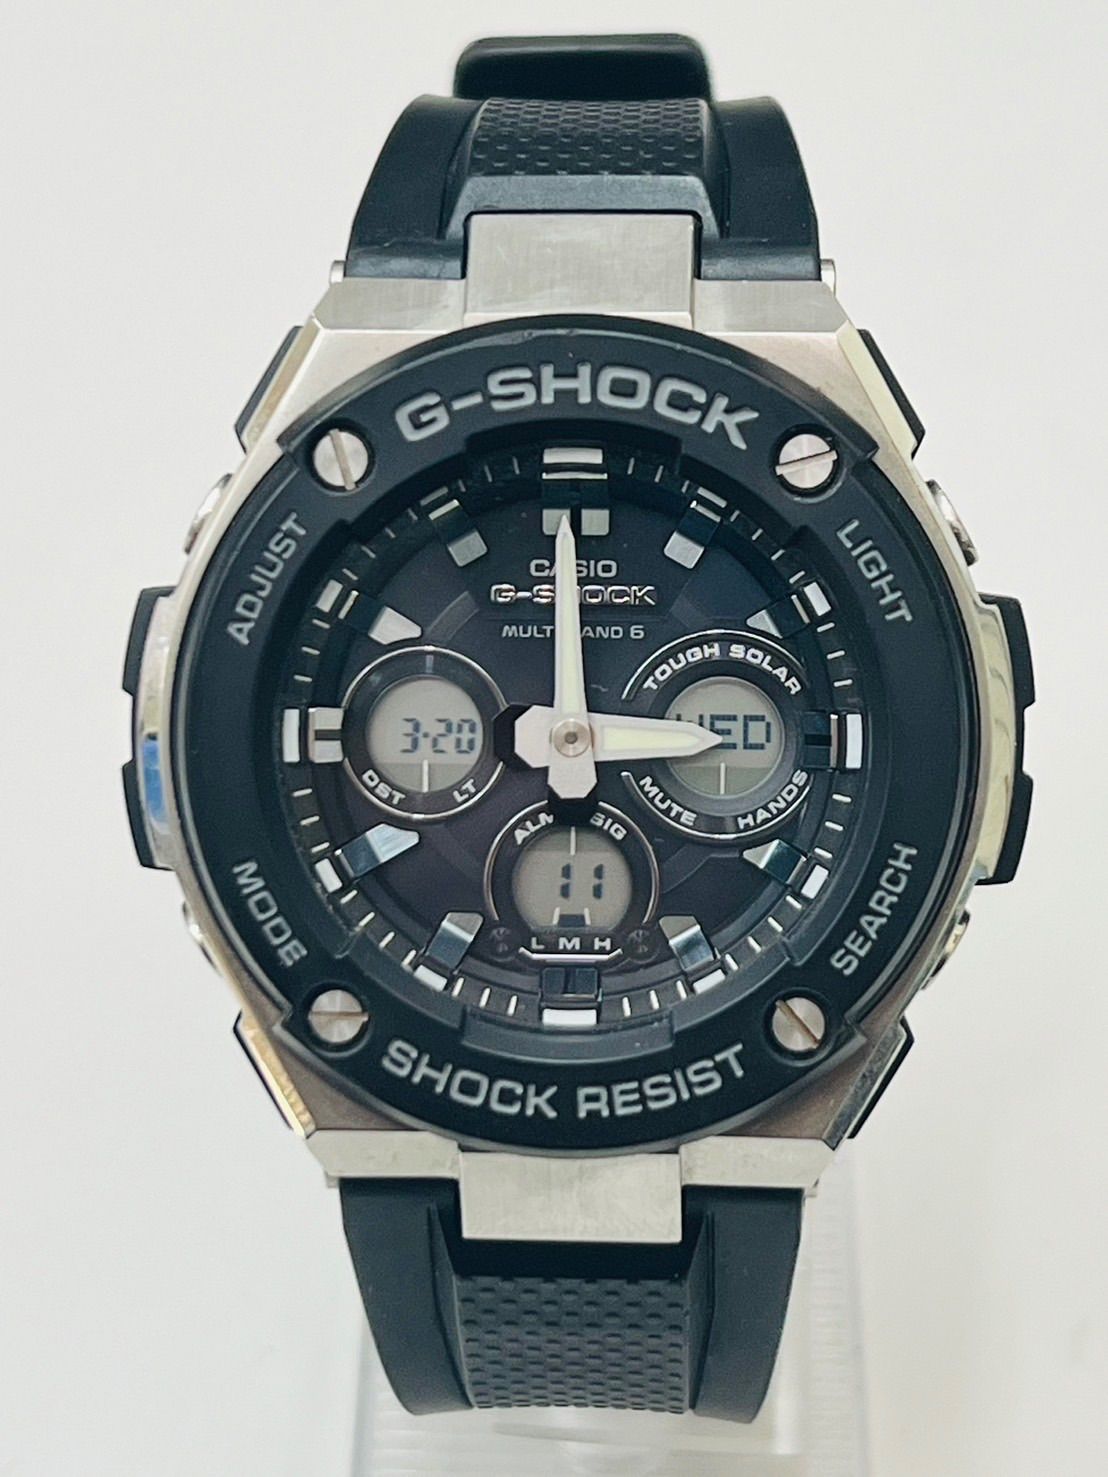 G-SHOCK Gショック G-STEEL Gスチール 電波ソーラー ウォッチ 腕時計 GST-W300-1AJF - メルカリ